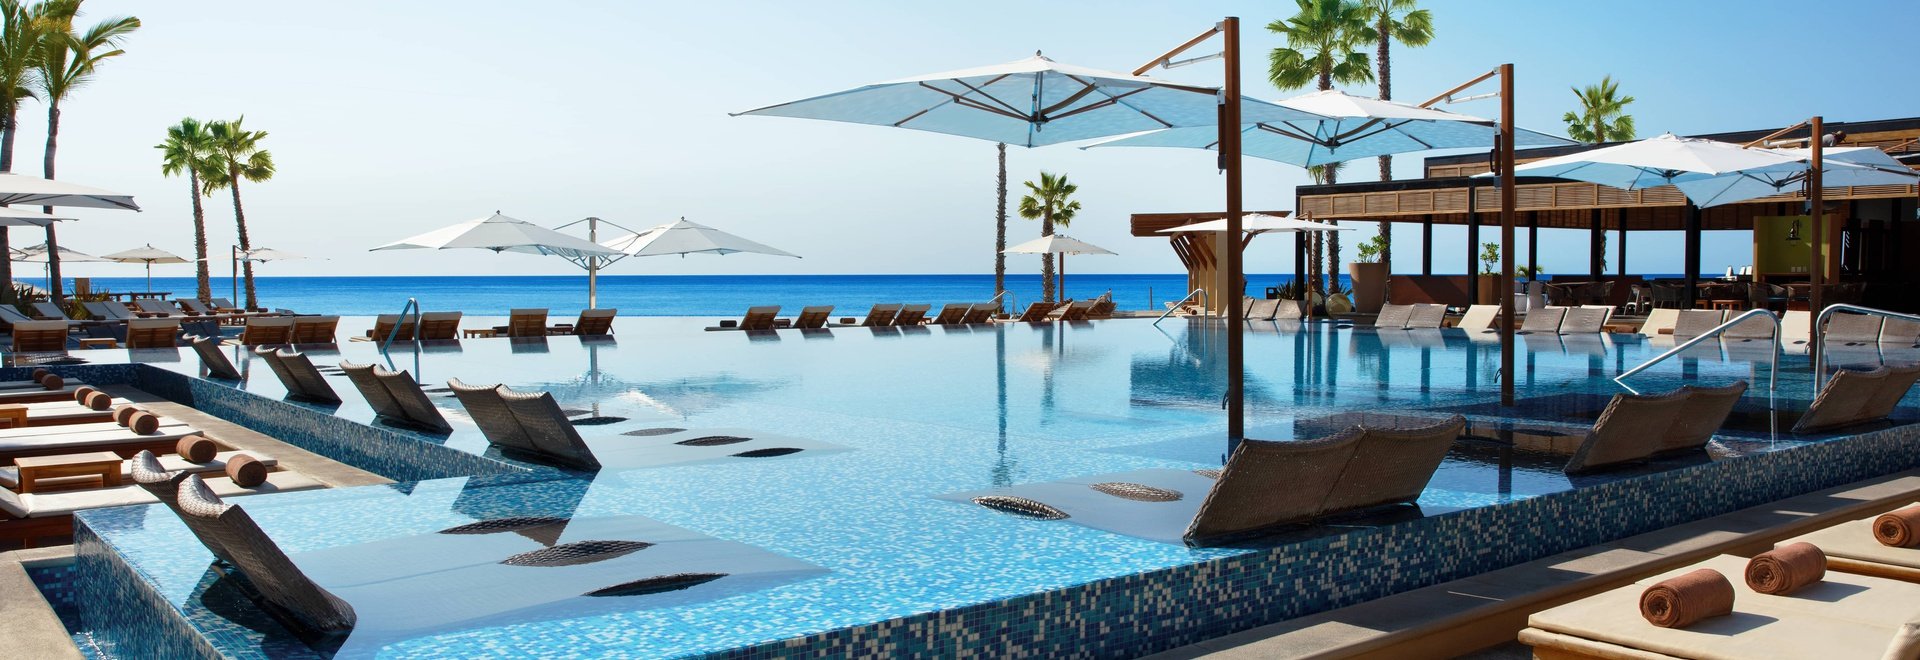 Hotel Krystal Grand Los Cabos - ¡Ofertas por tiempo limitado!